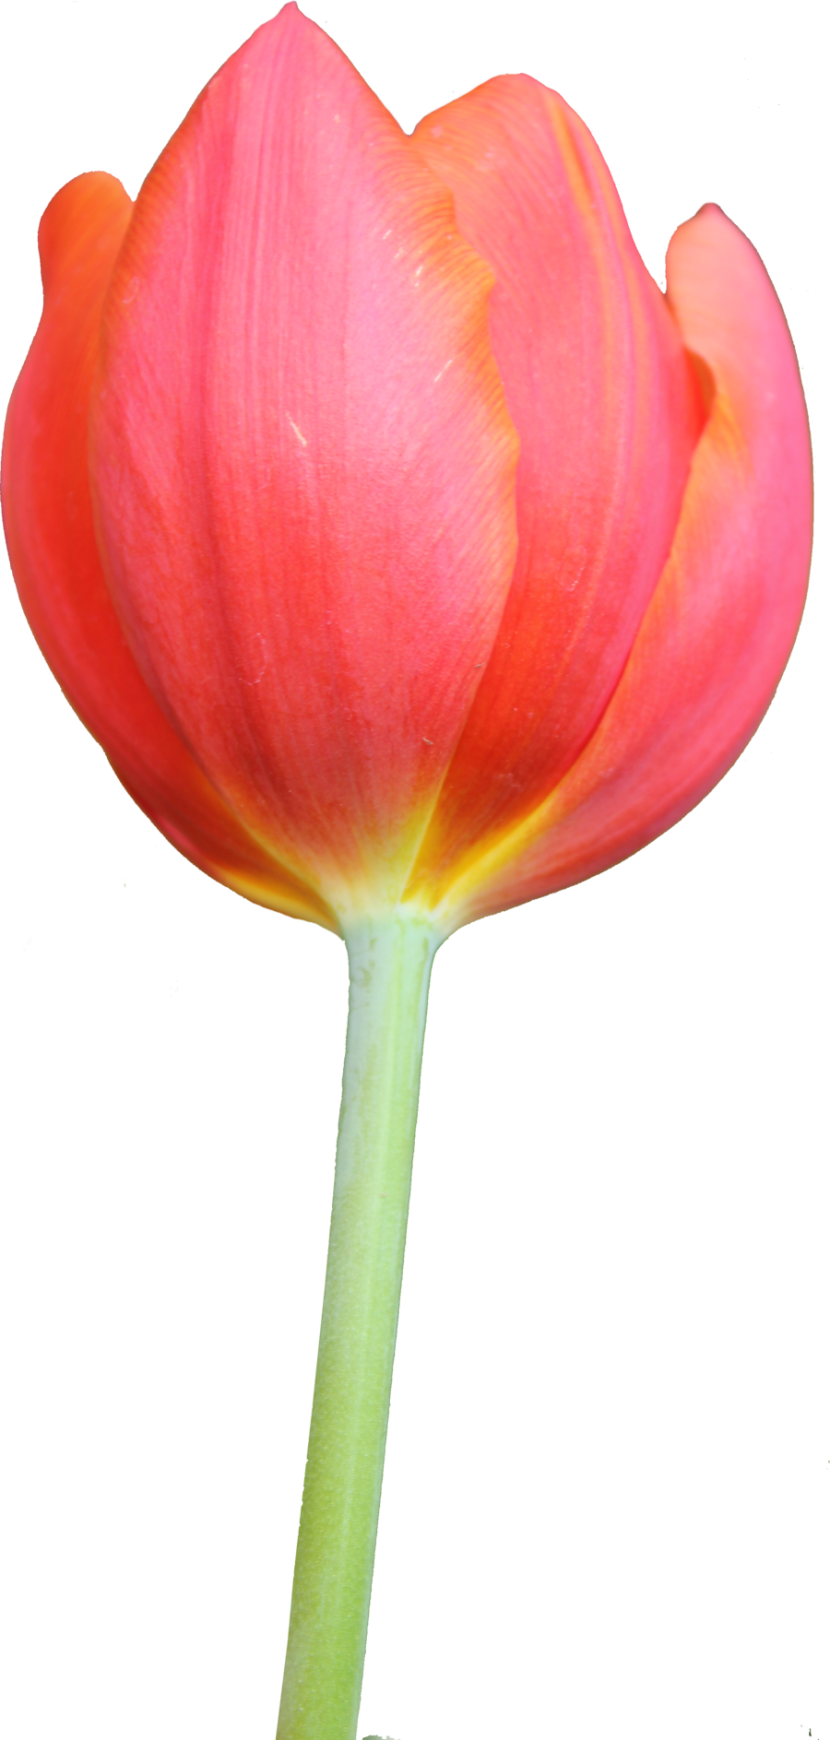 Tulip Transparent Image Clipart